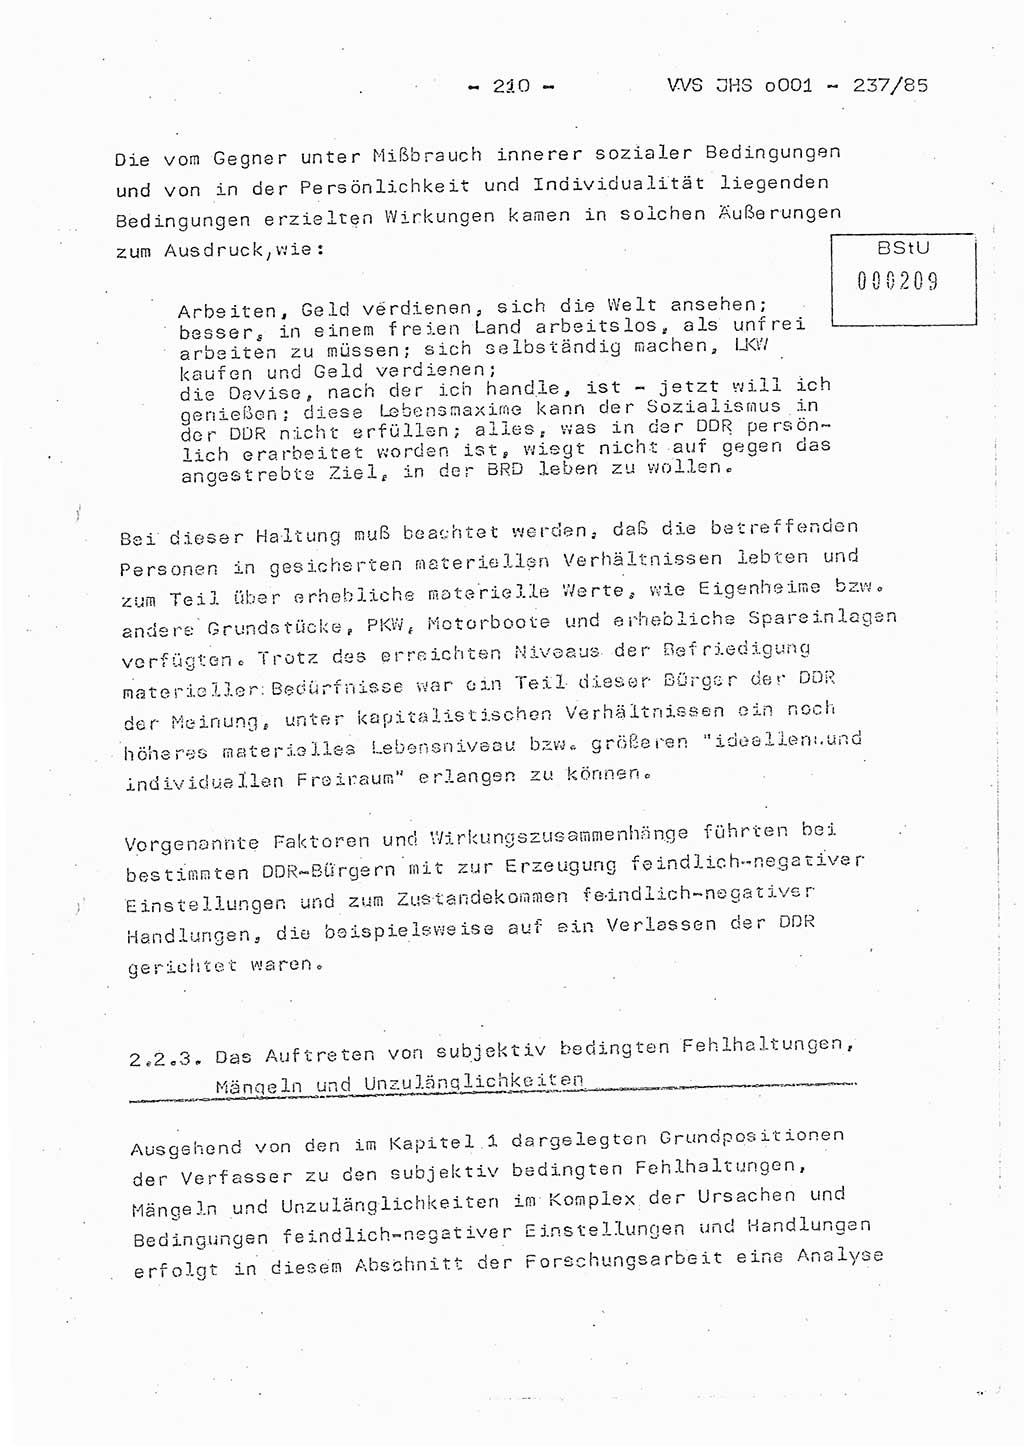 Dissertation Oberstleutnant Peter Jakulski (JHS), Oberstleutnat Christian Rudolph (HA Ⅸ), Major Horst Böttger (ZMD), Major Wolfgang Grüneberg (JHS), Major Albert Meutsch (JHS), Ministerium für Staatssicherheit (MfS) [Deutsche Demokratische Republik (DDR)], Juristische Hochschule (JHS), Vertrauliche Verschlußsache (VVS) o001-237/85, Potsdam 1985, Seite 210 (Diss. MfS DDR JHS VVS o001-237/85 1985, S. 210)